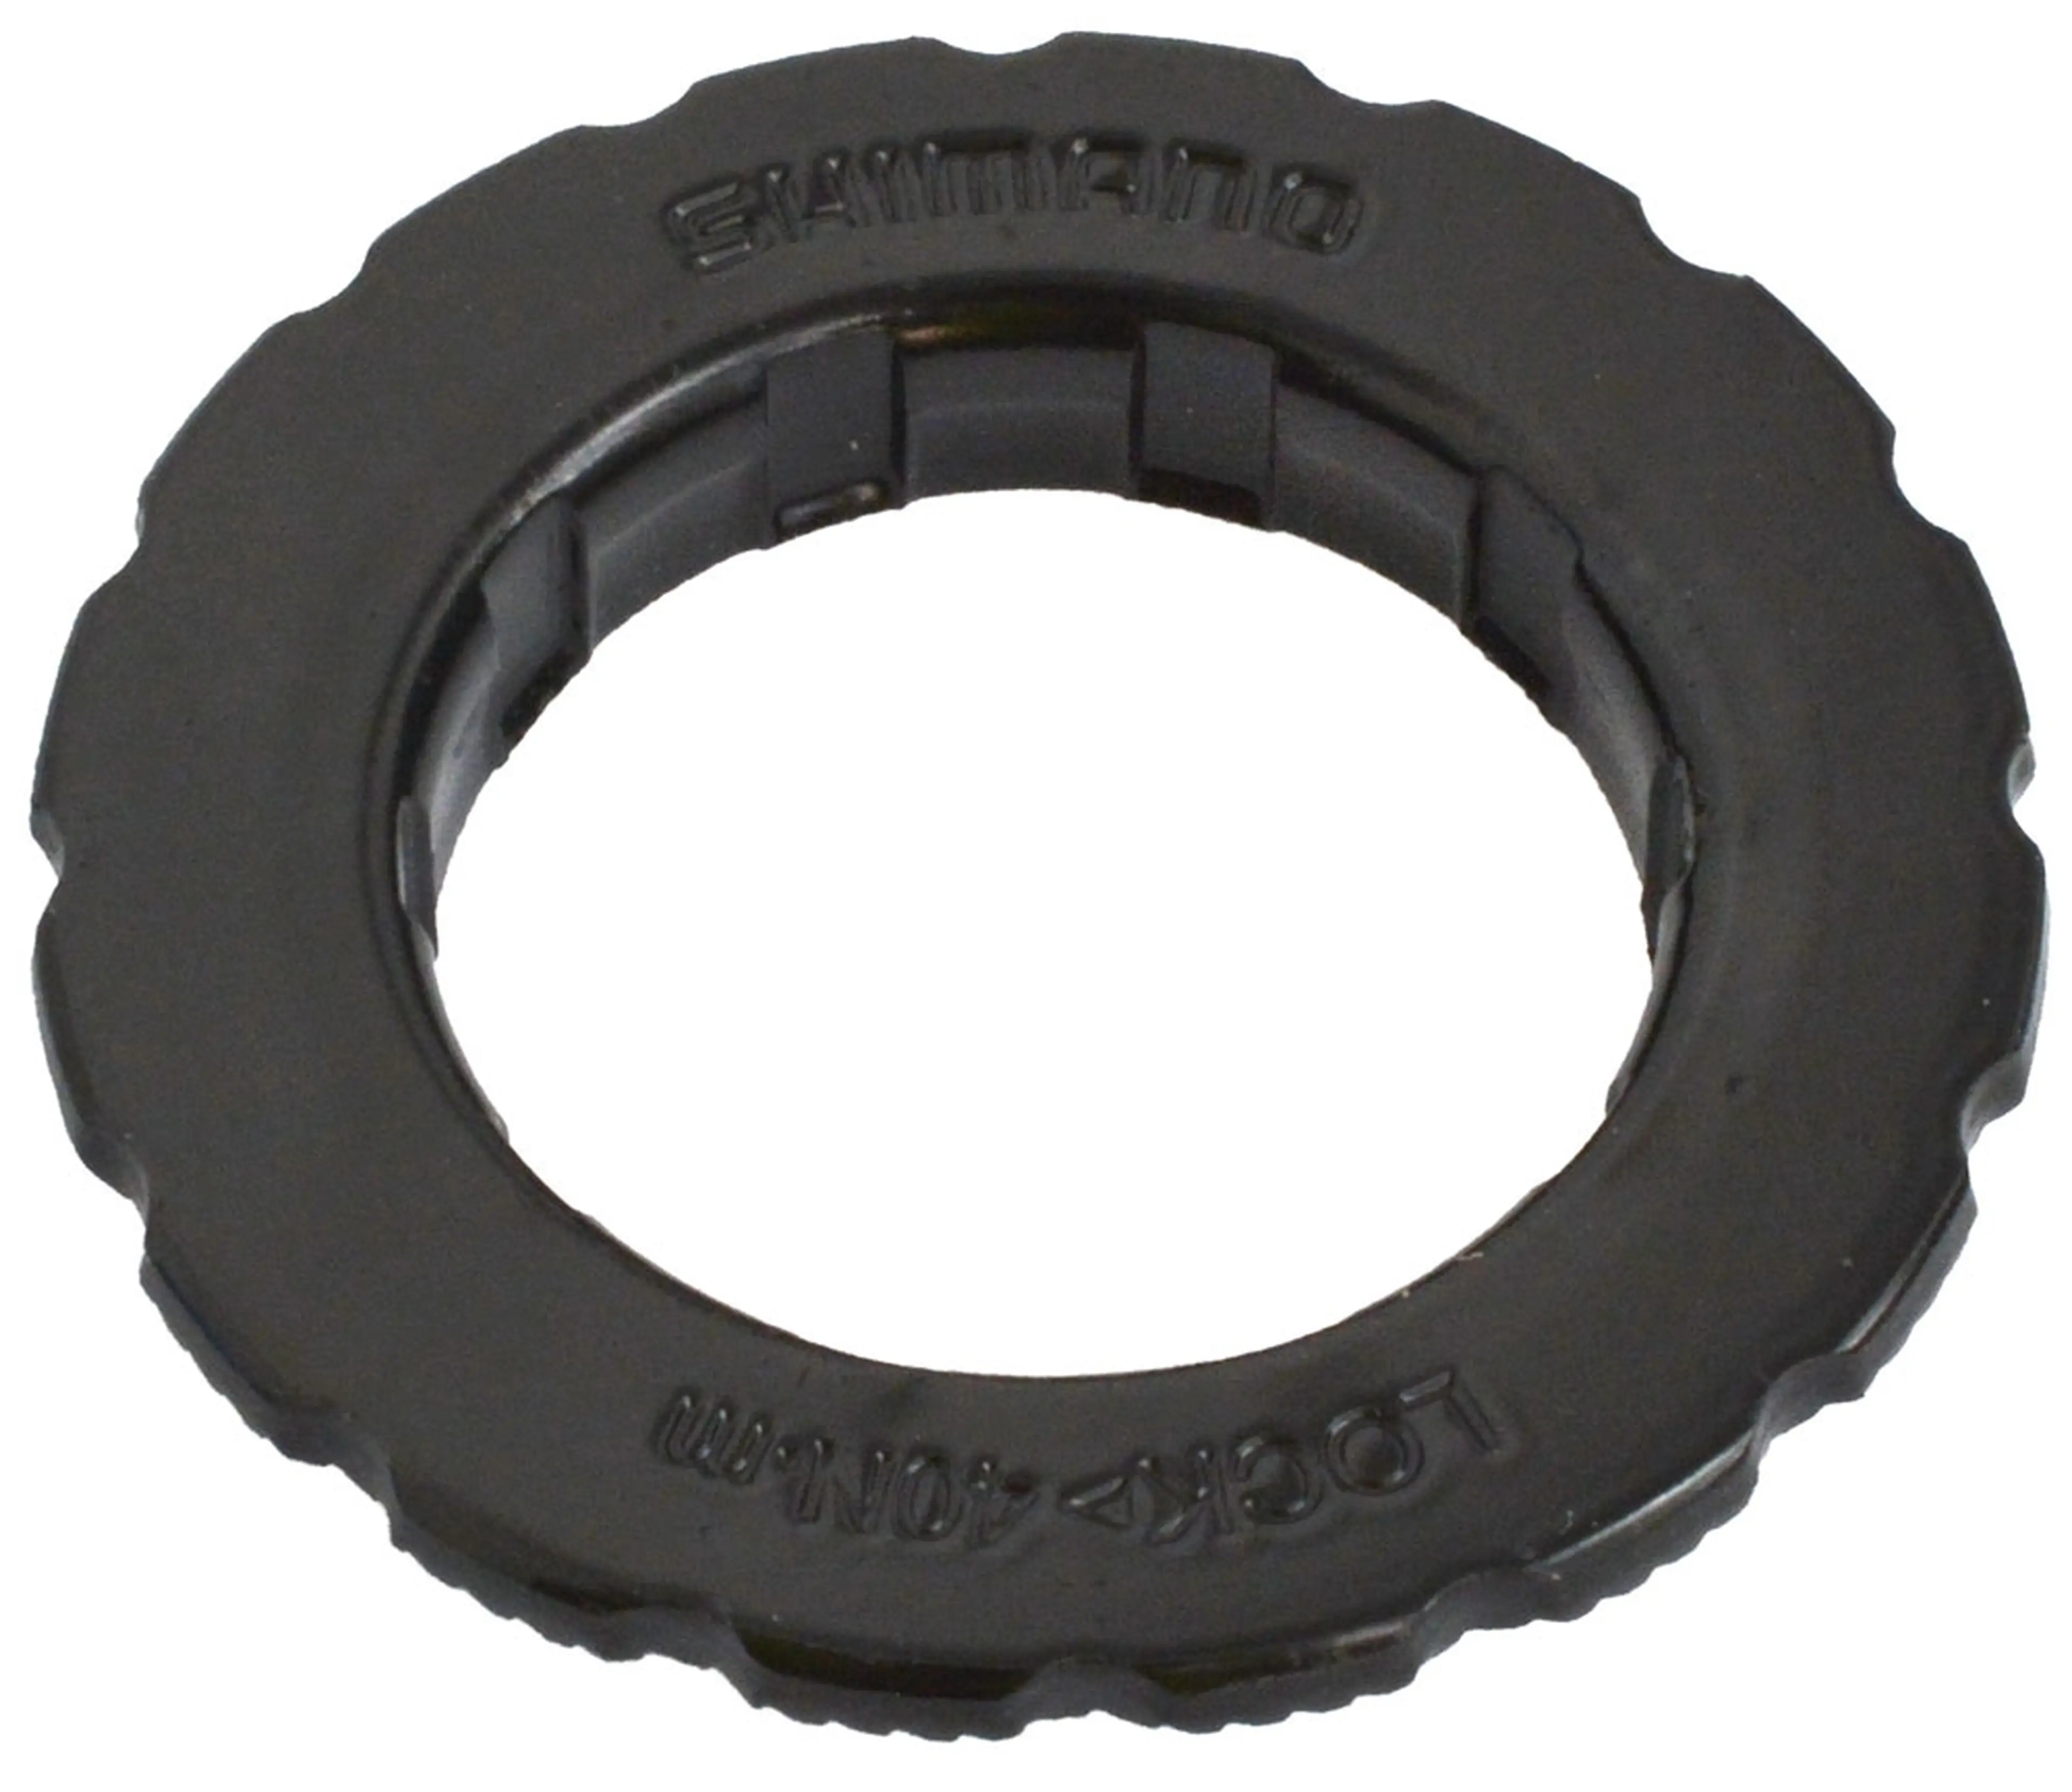 Image Shimano SM-RT30 Lock Ring external type